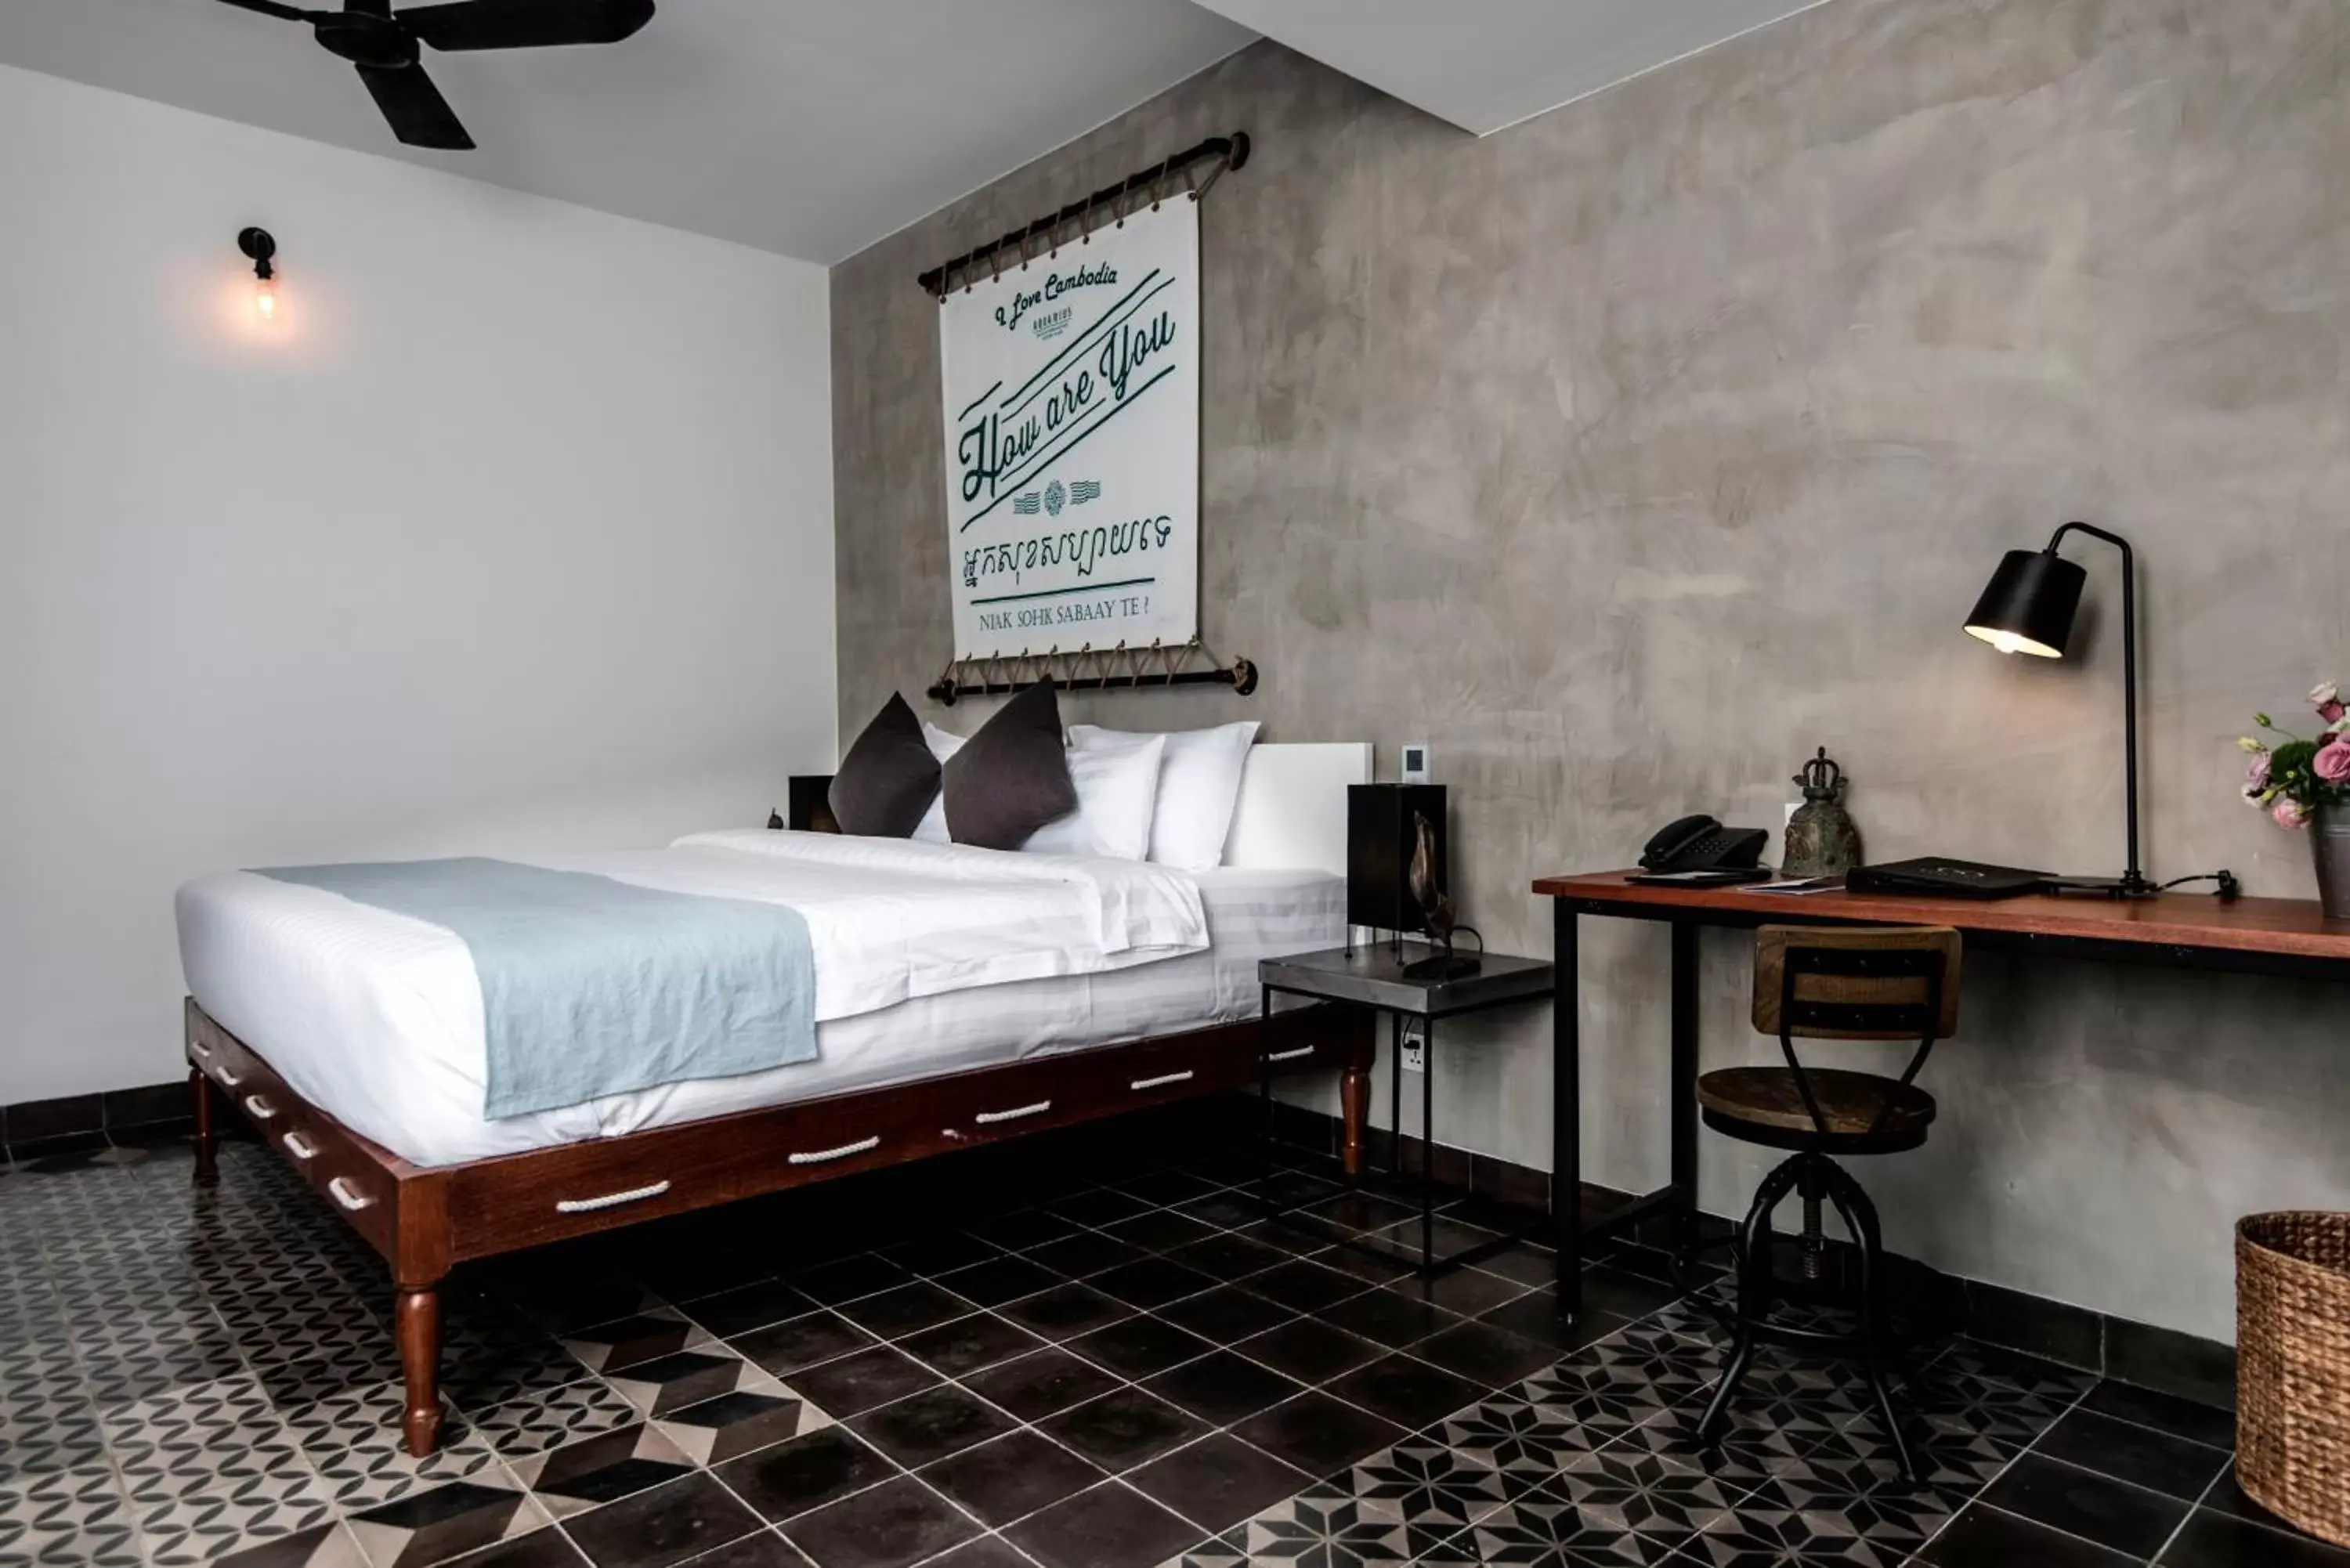 Decorative detail, Room Photo in Aquarius Hotel and Urban Resort